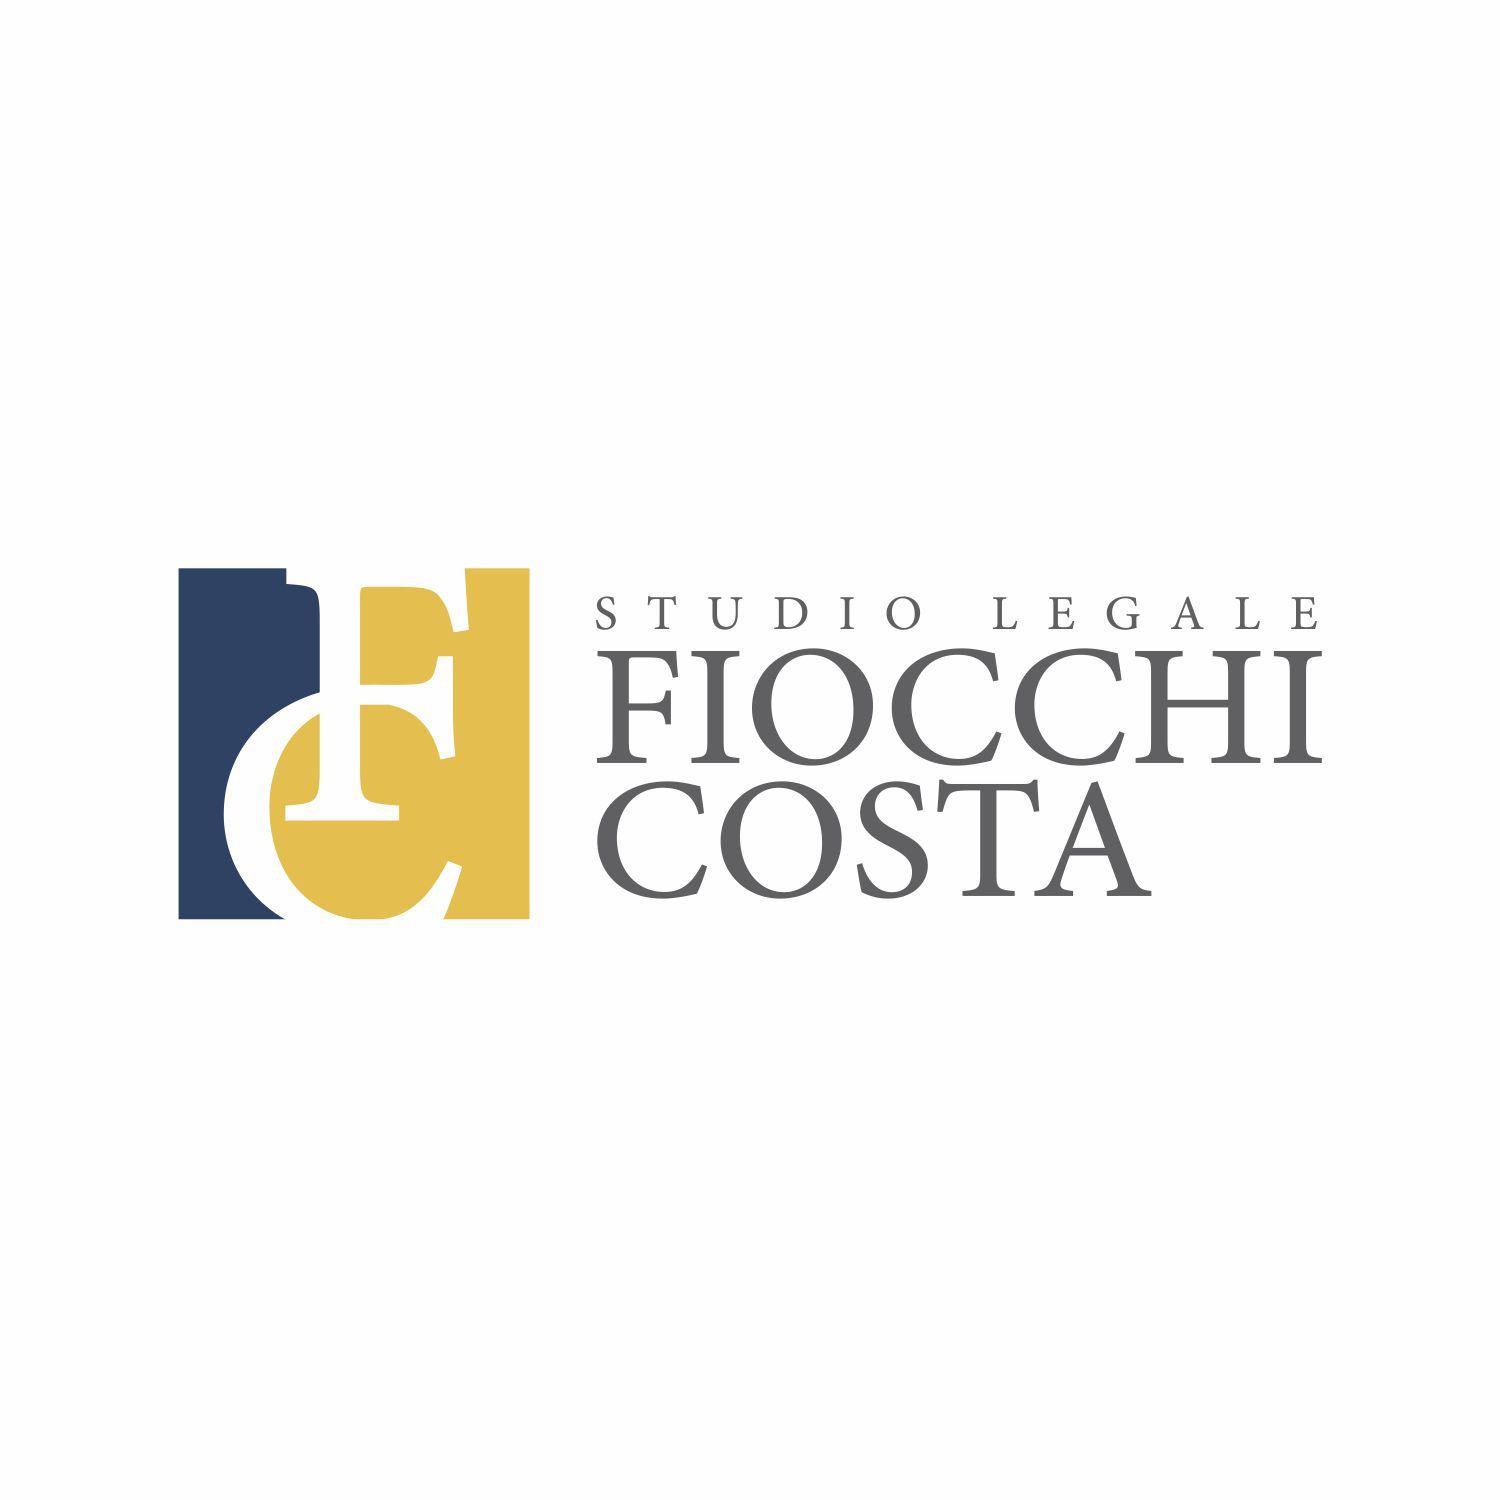 Fiocchi Logo - Elegant, Professional Logo Design for Studio Legale Fiocchi Costa by ...